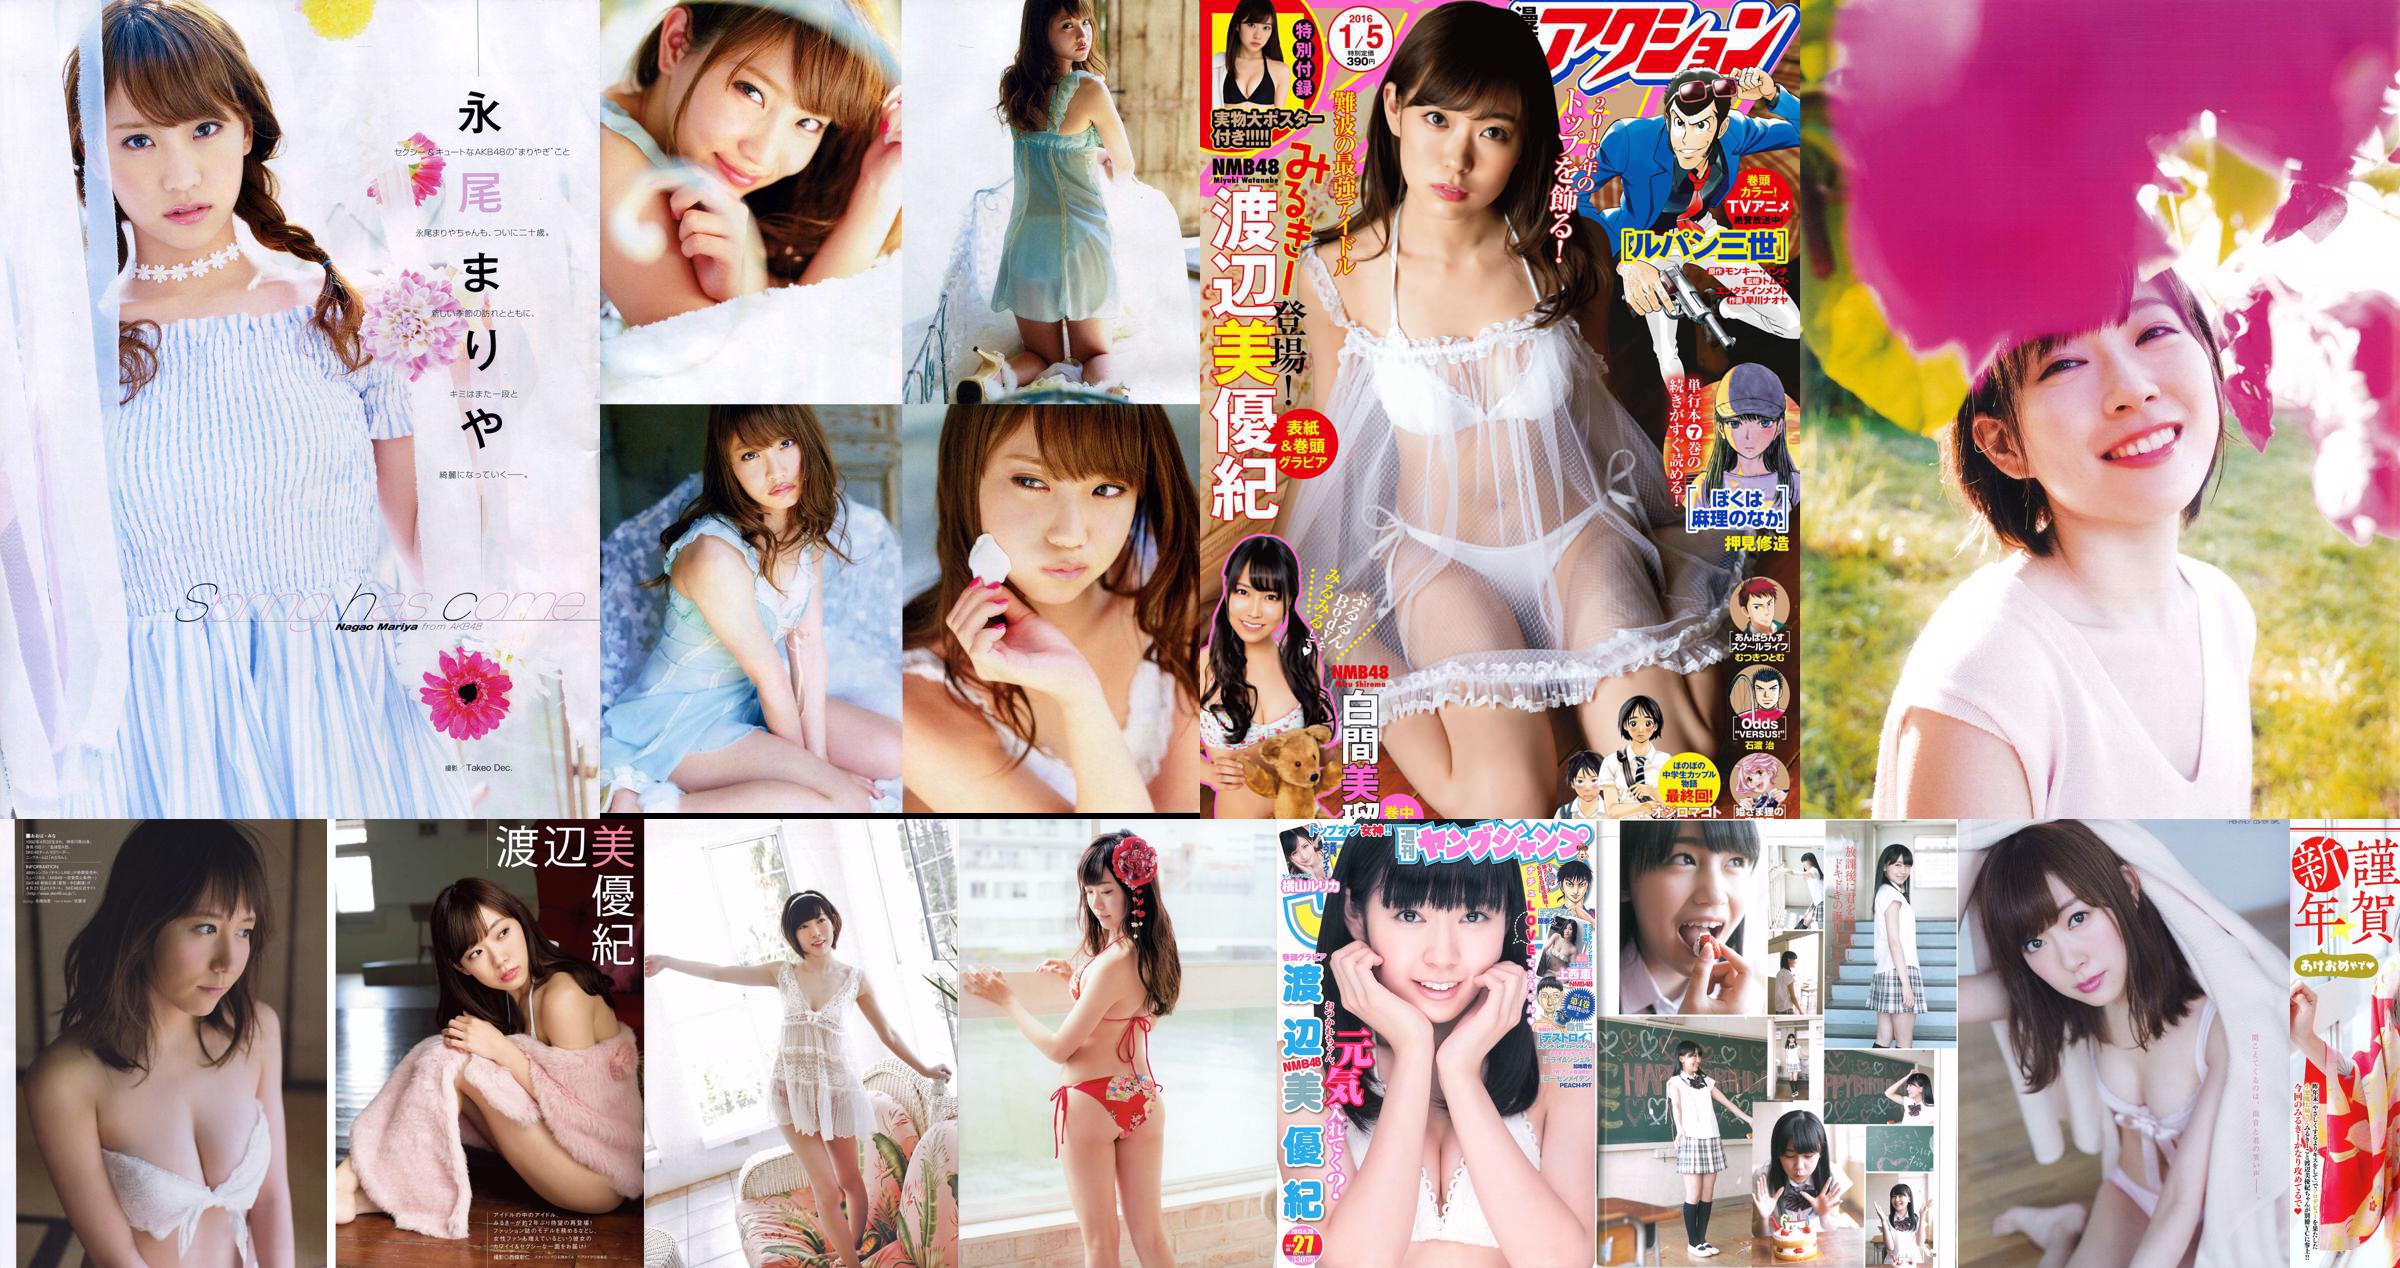 [Young Gangan] Rena Matsui Rika Tonosaki Ayaka Ohnuki 2014 No.03 Photograph No.3c8127 Page 8